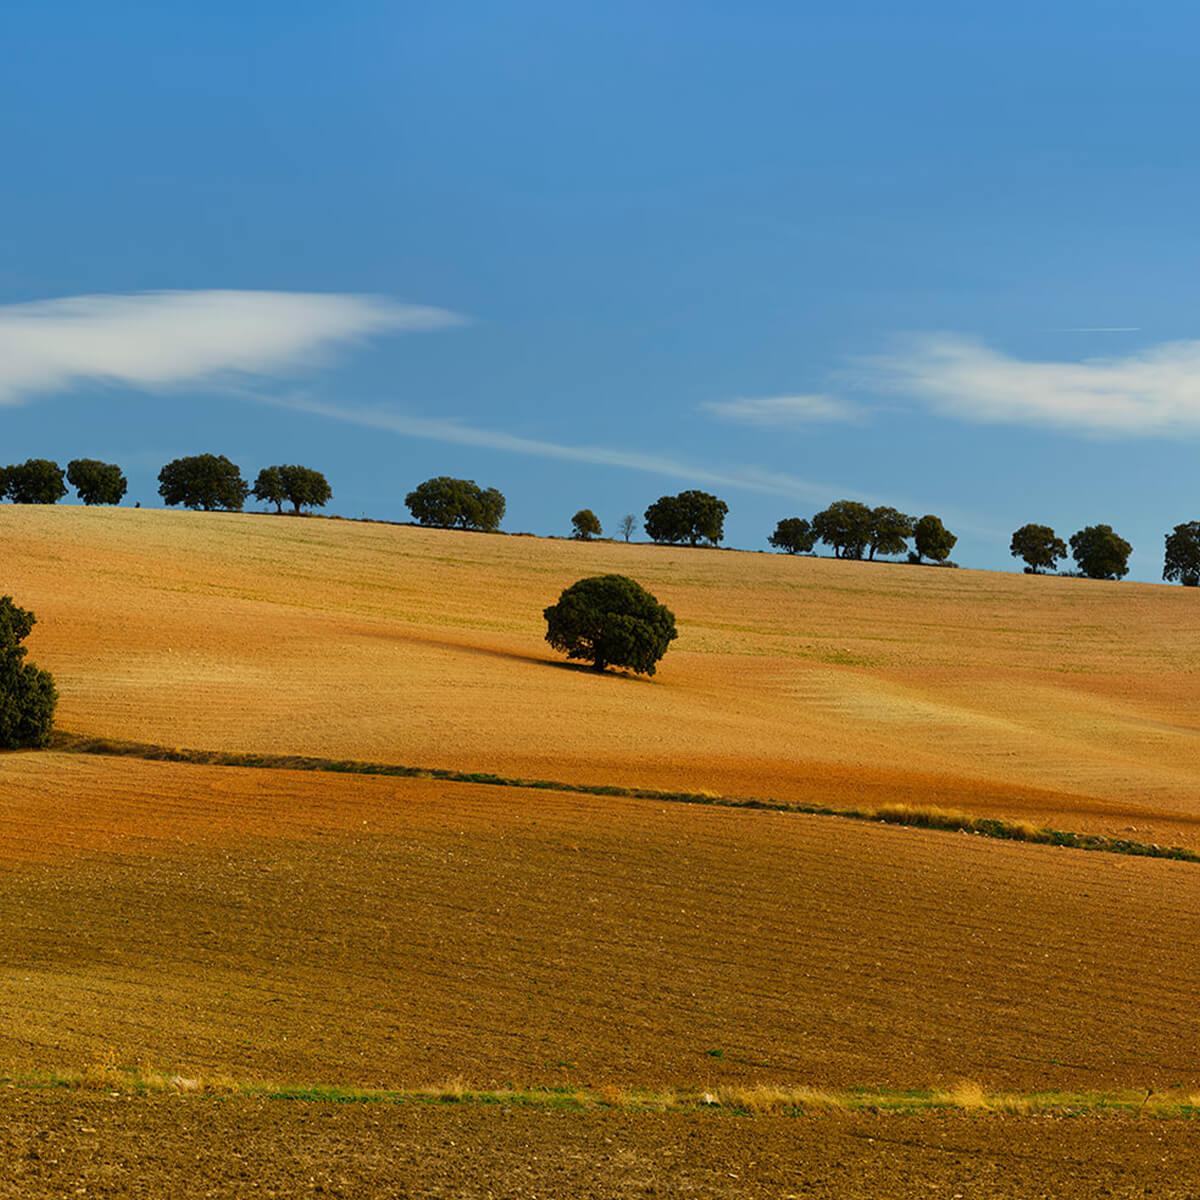 Les arbres dans le paysage espagnol